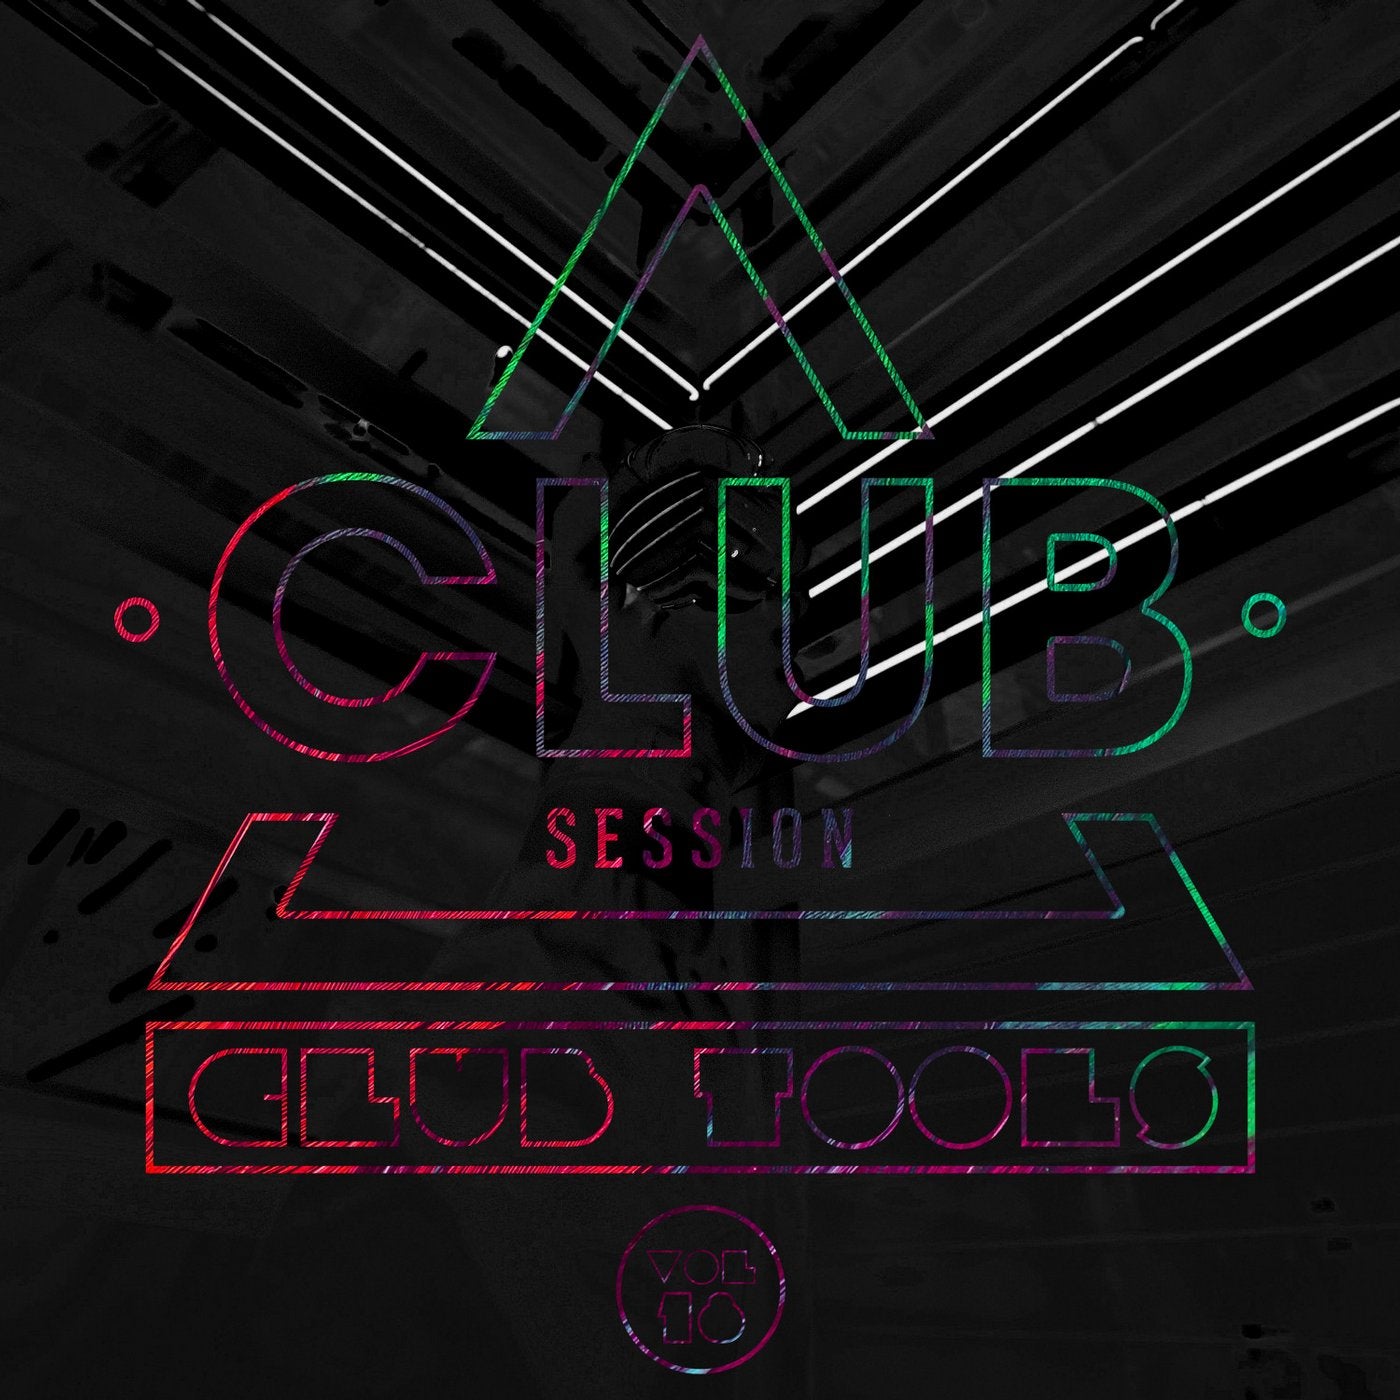 Club Session pres. Club Tools Vol. 18